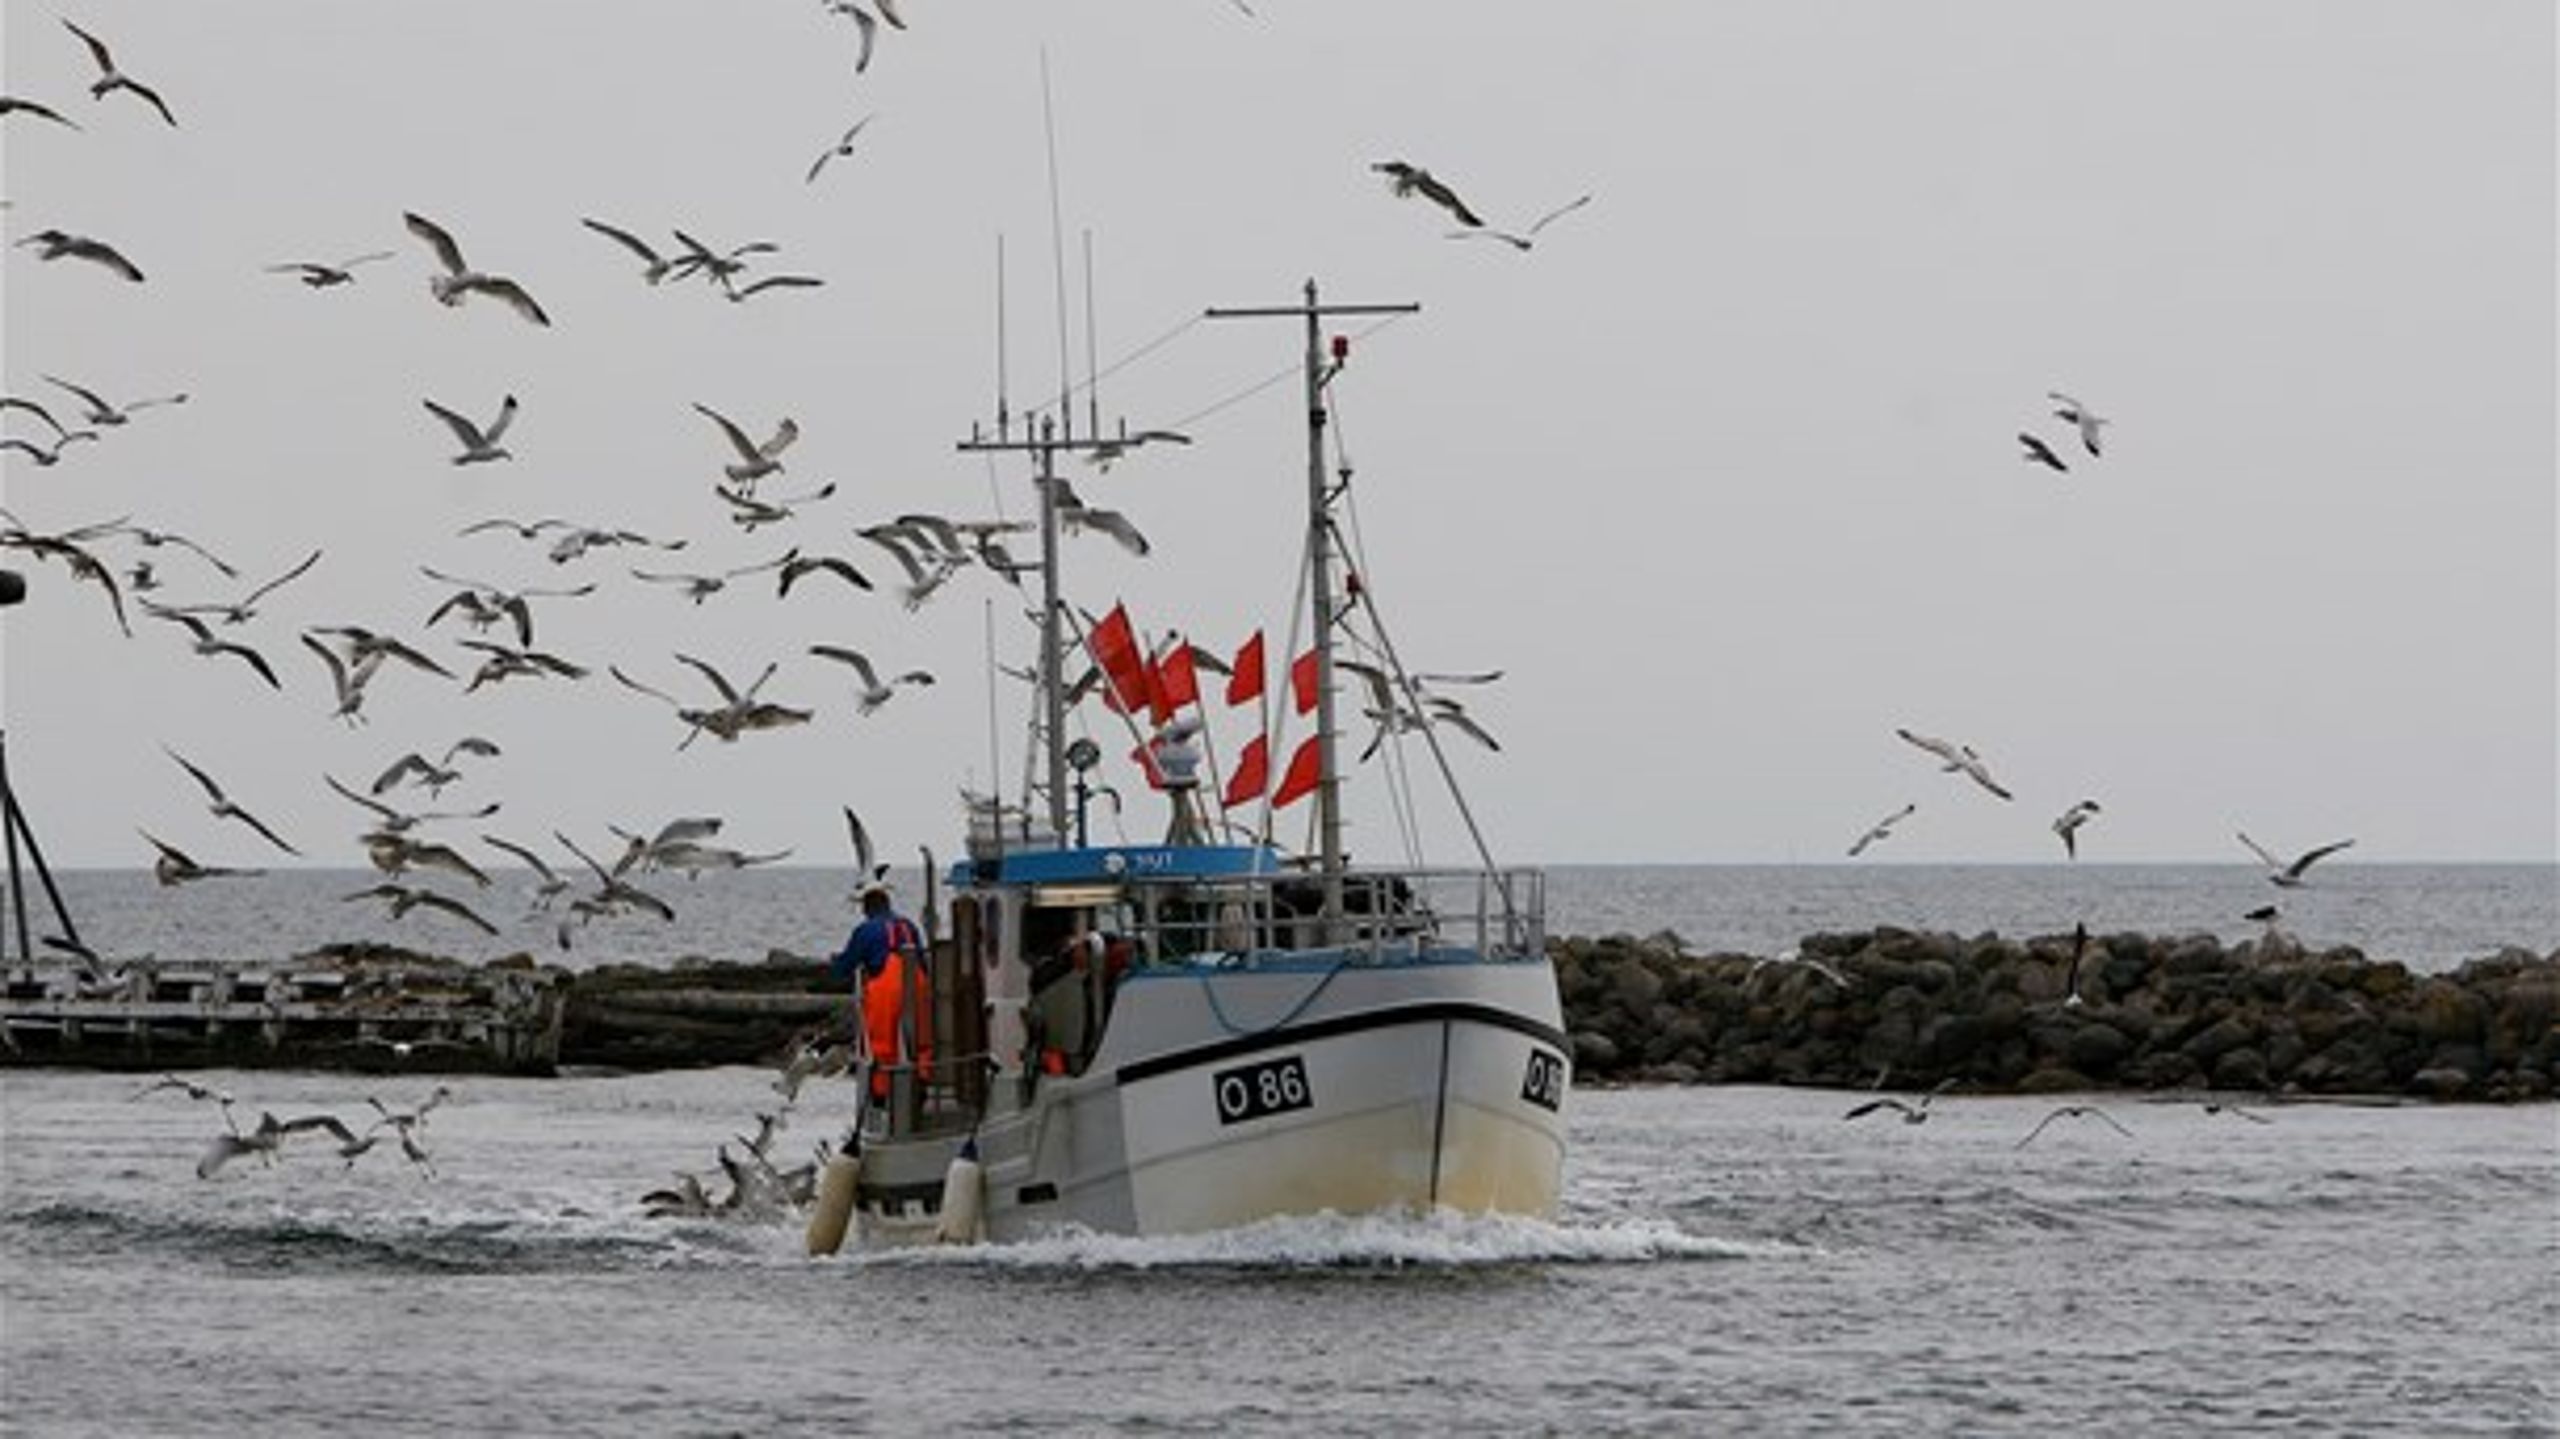 Reglerne om landingsforpligtelse indføres løbende. Første del af discardforbuddet kom i 2015, mens senest i 2019 vil alle fiskerier i EU-farvande være omfattet af discardforbuddet, skriver Landbrugs- og Fiskeristyrelsen.